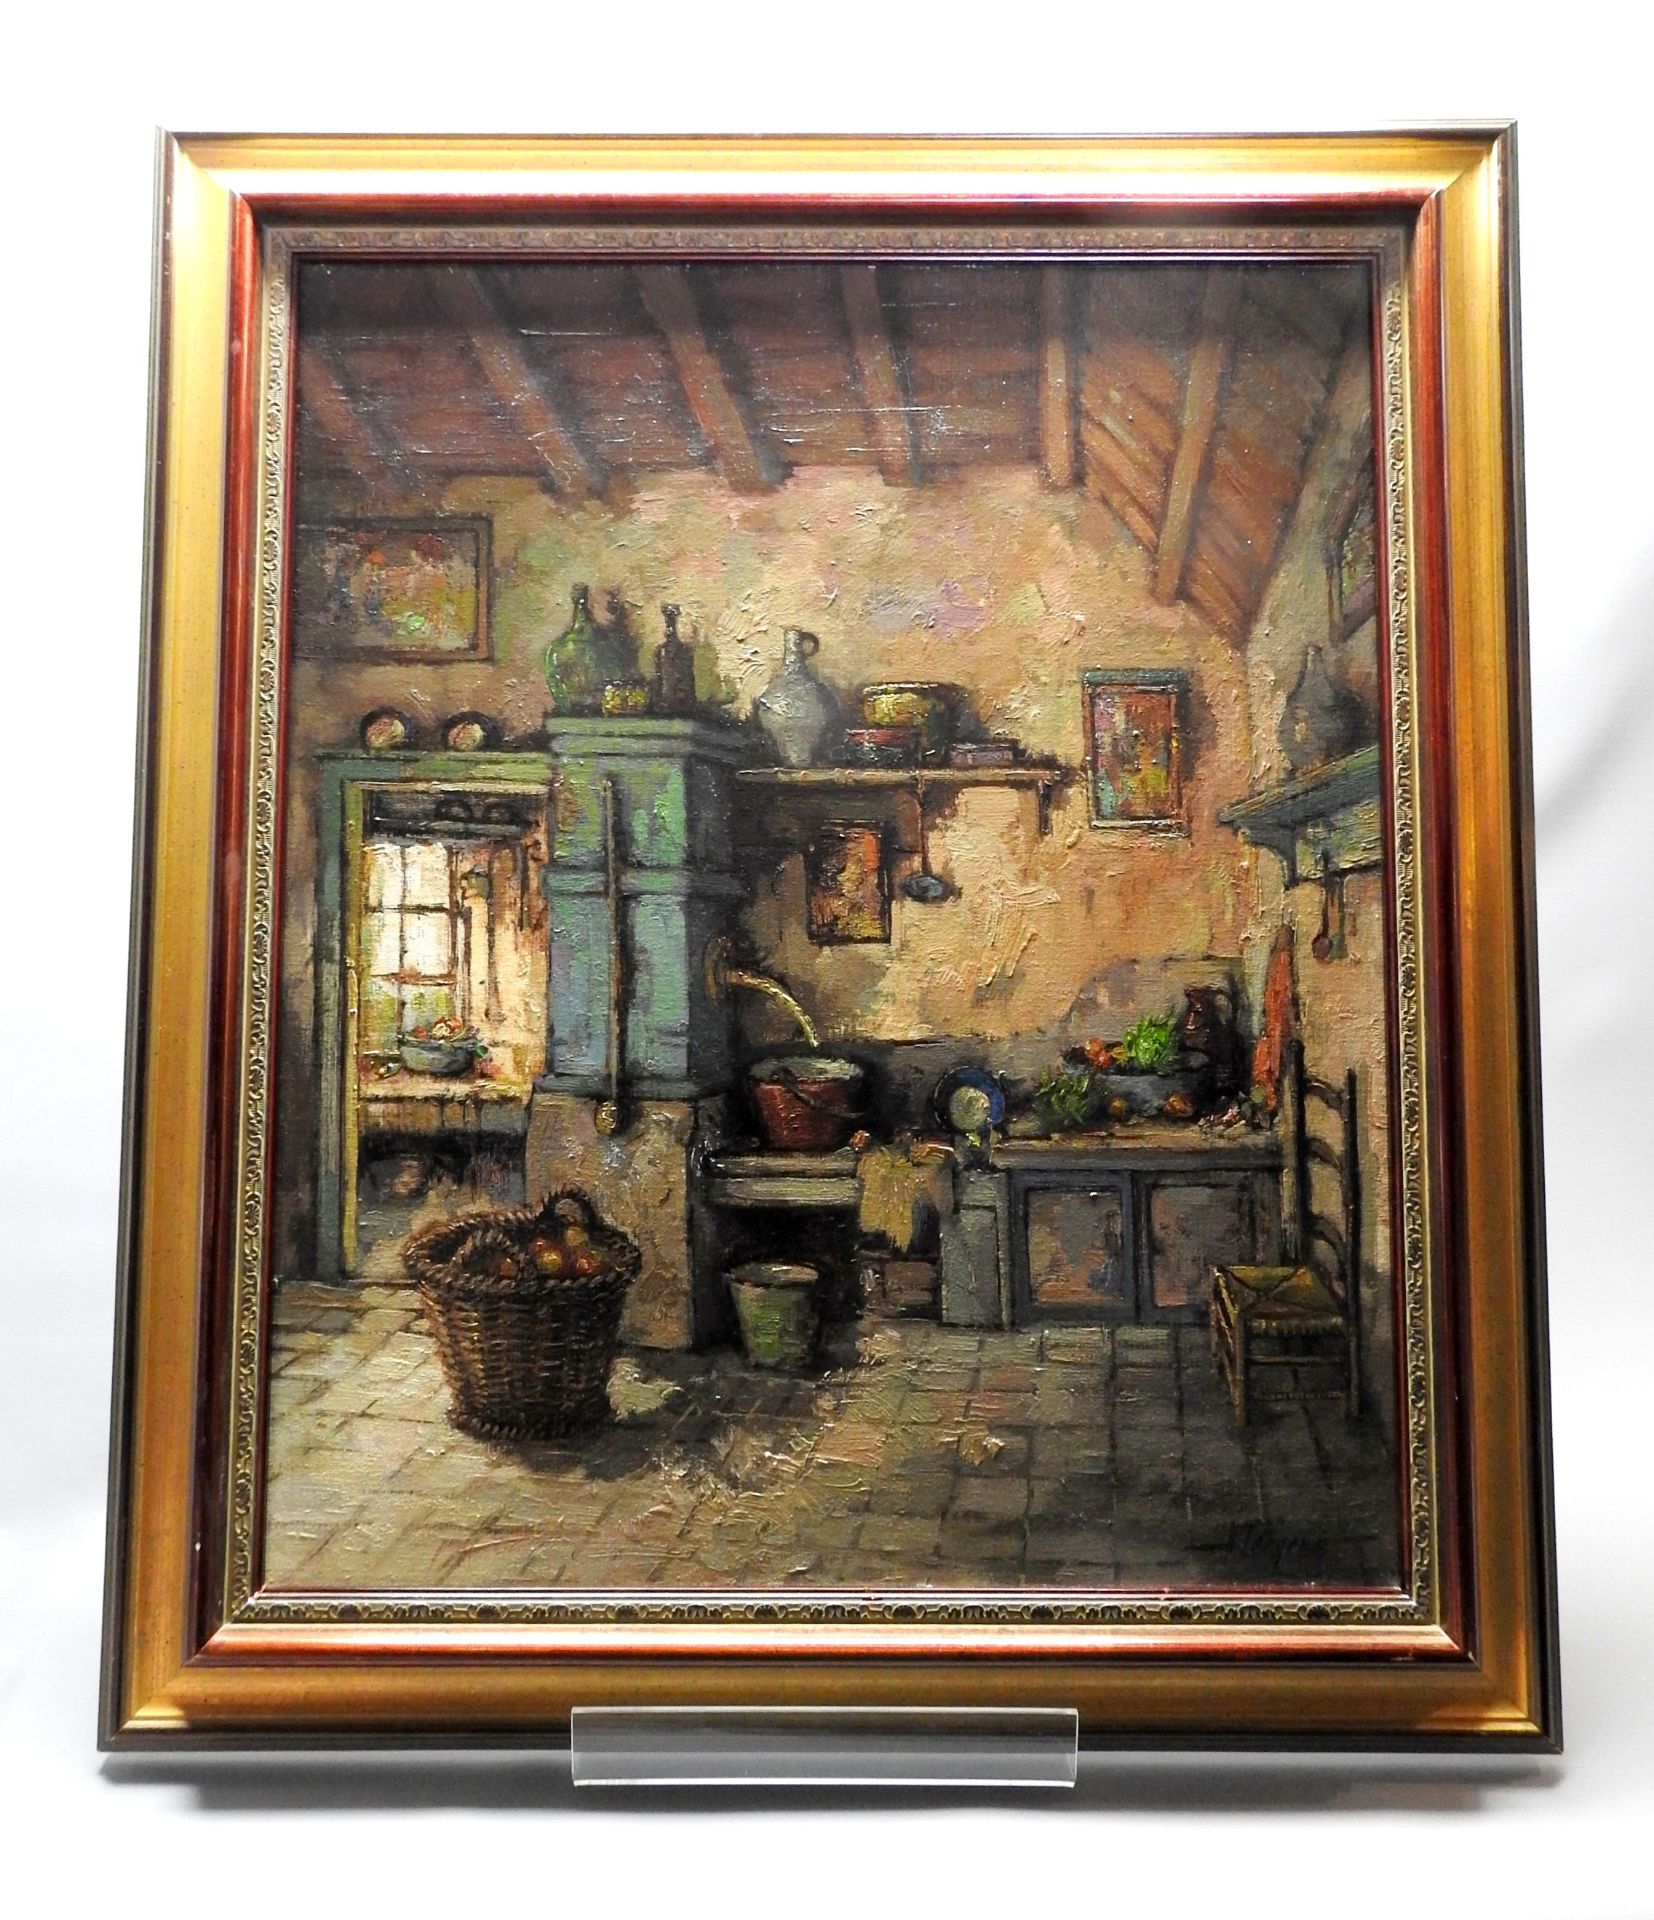 Harry Zeegers, 1929 Oss Öl/Leinwand. Farbenfrohes impressionistisches Kücheninterieu - Image 2 of 4